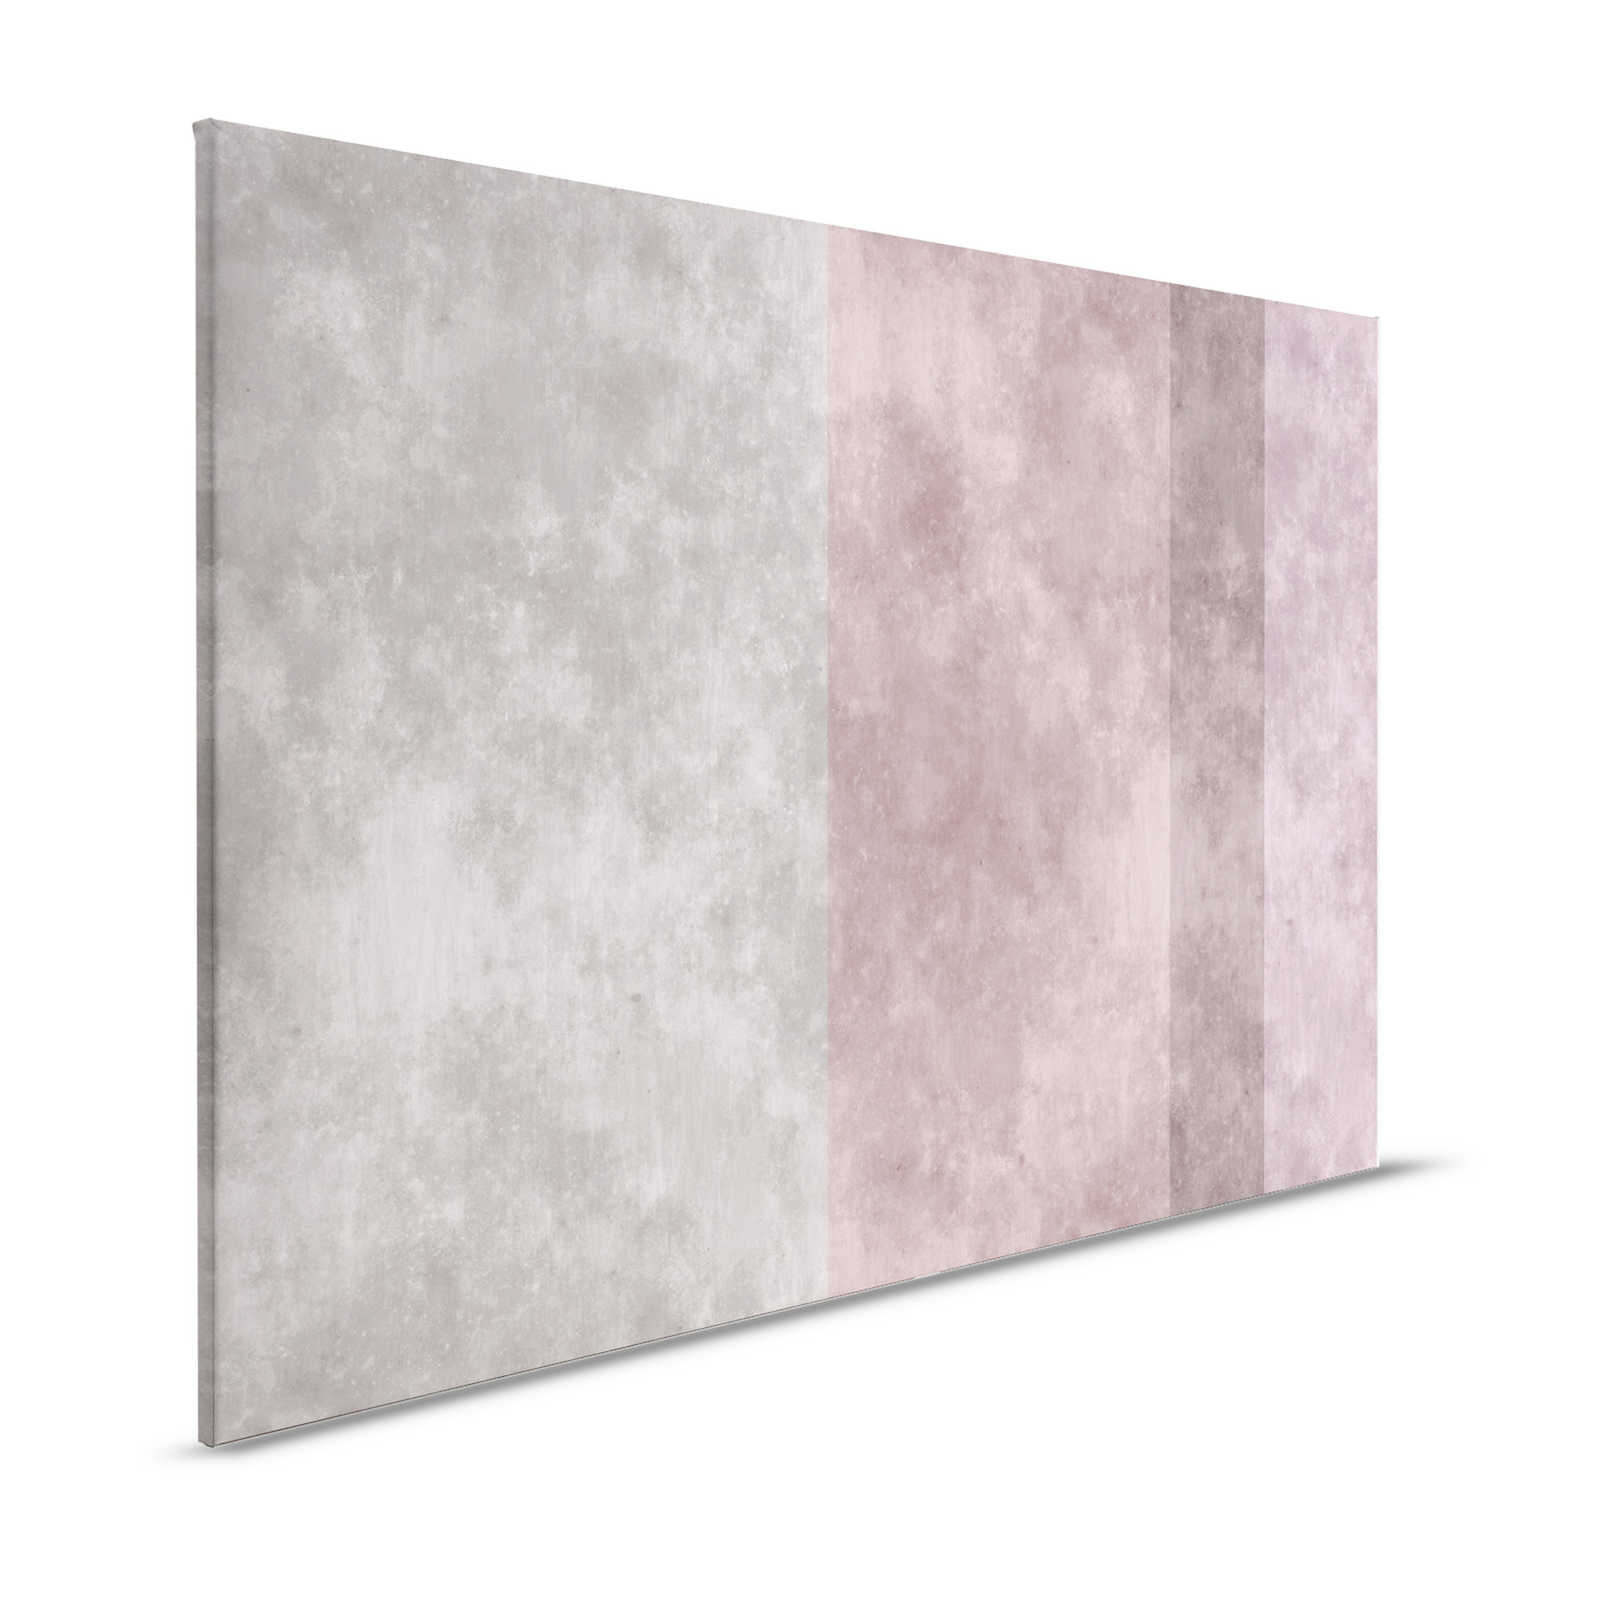 Betonlook canvas schilderij met strepen | grijs, roze - 1,20 m x 0,80 m
